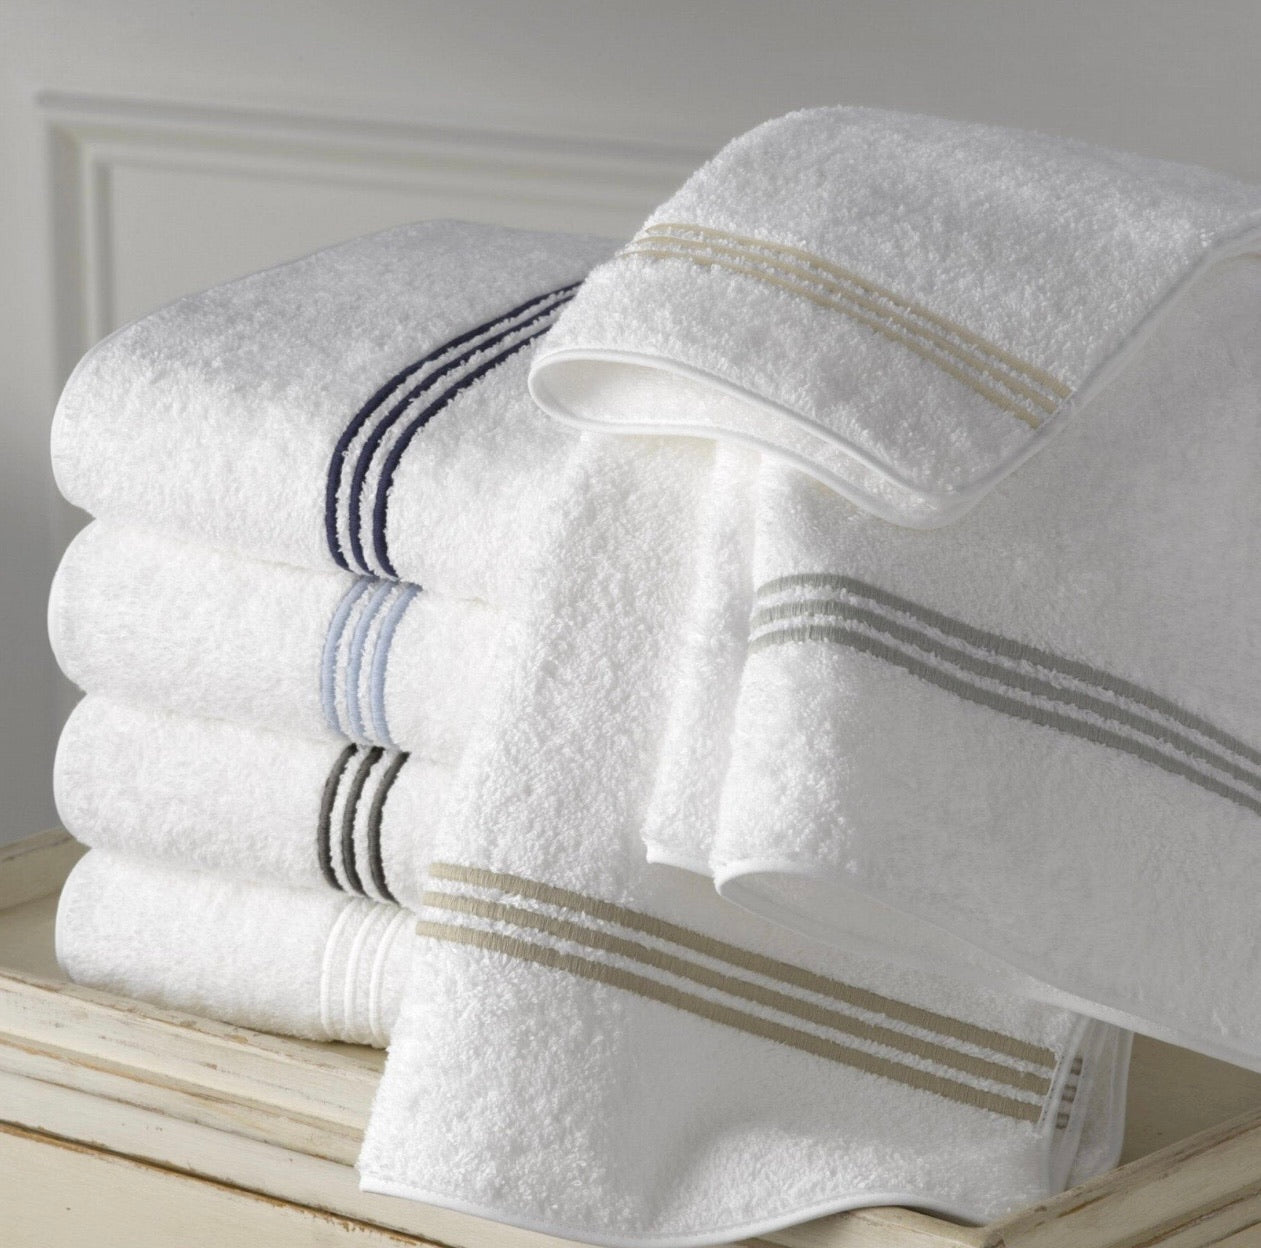 Towels and Bath Mats